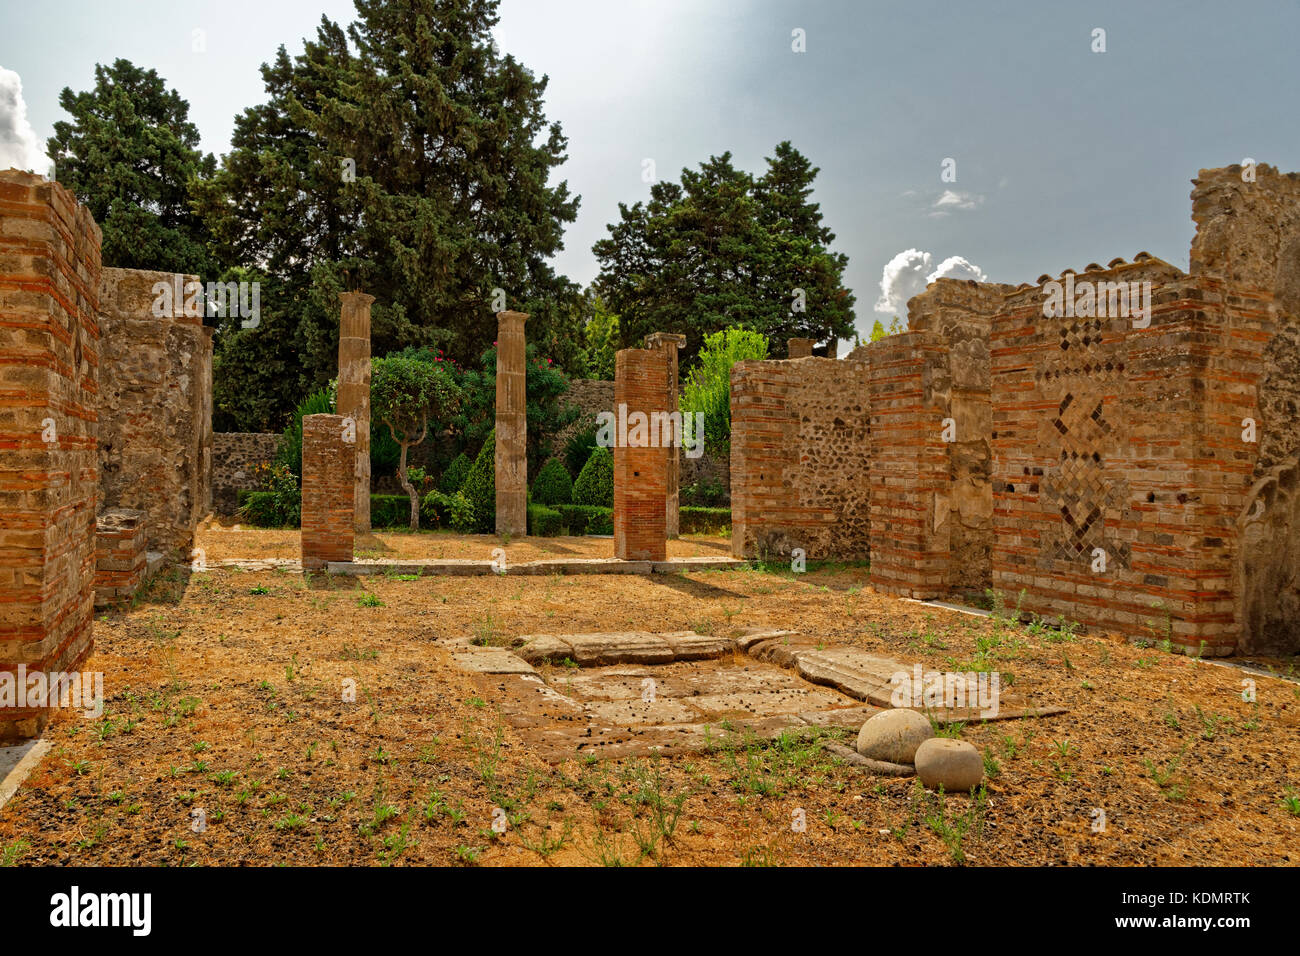 Villa cortile in rovina la città romana di Pompei a Pompei Scavi, vicino napoli, Italia meridionale. Foto Stock